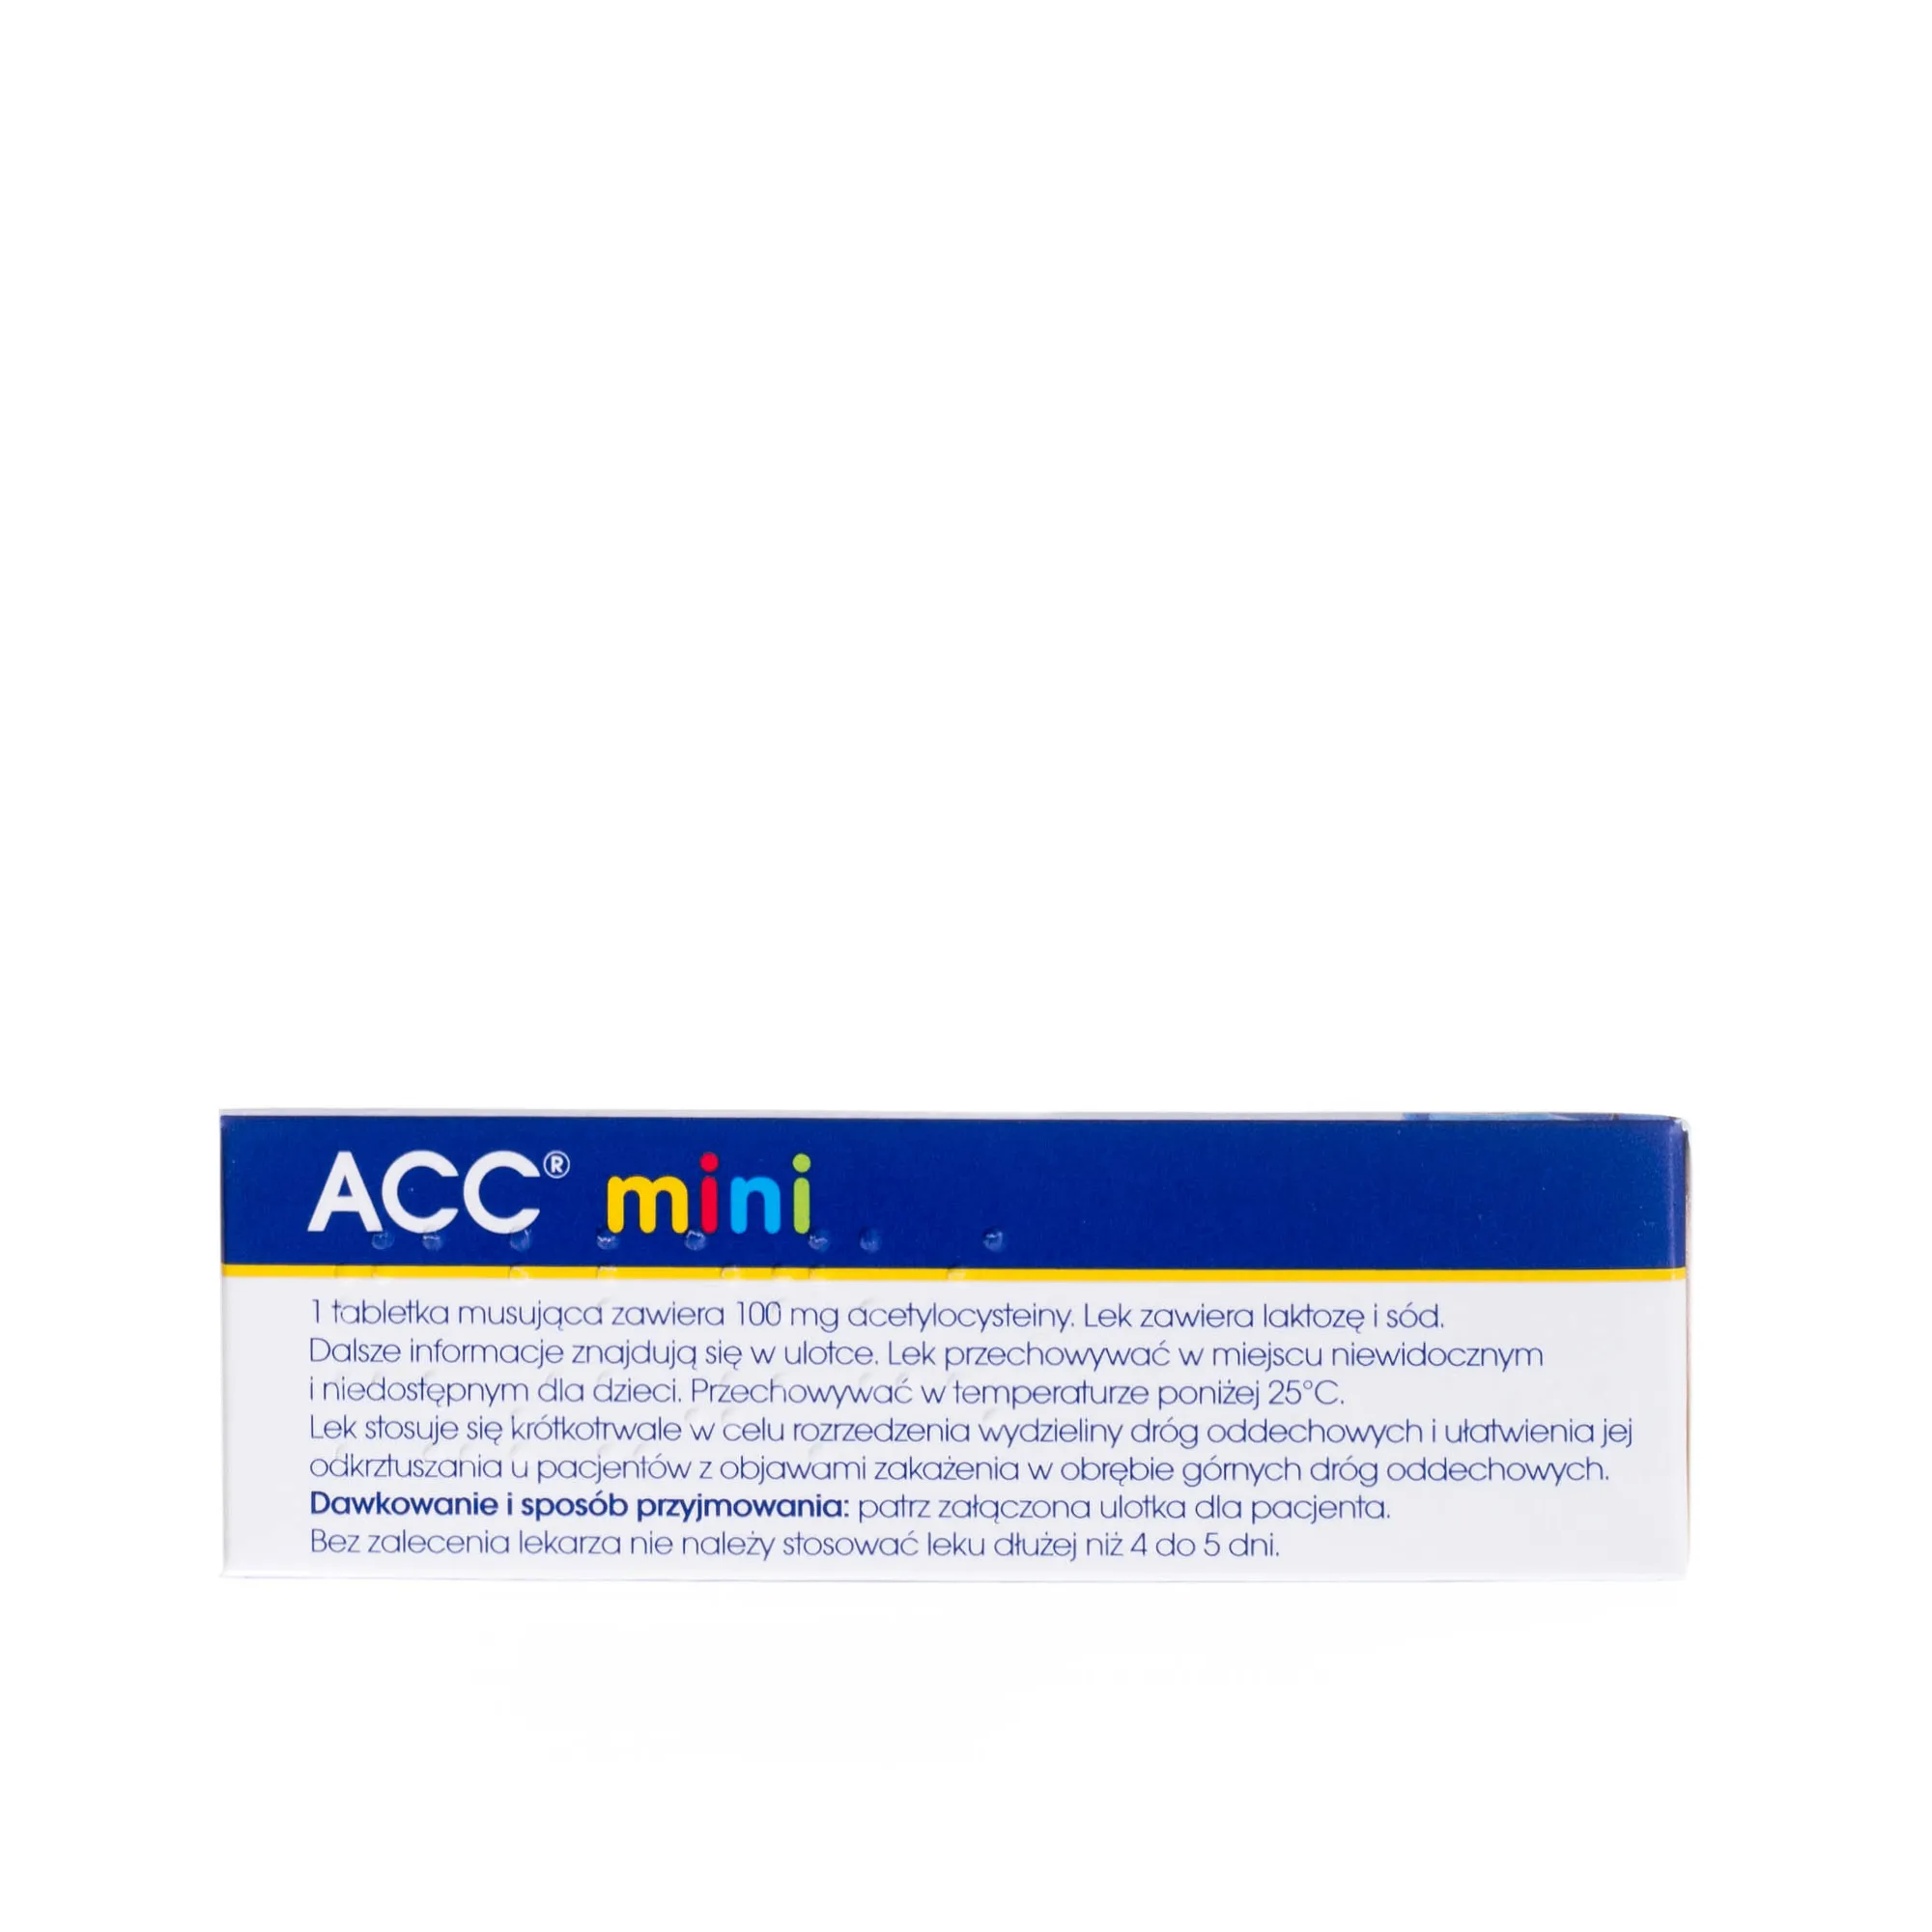 ACC mini, 100 mg, 20 tabletek musujących 